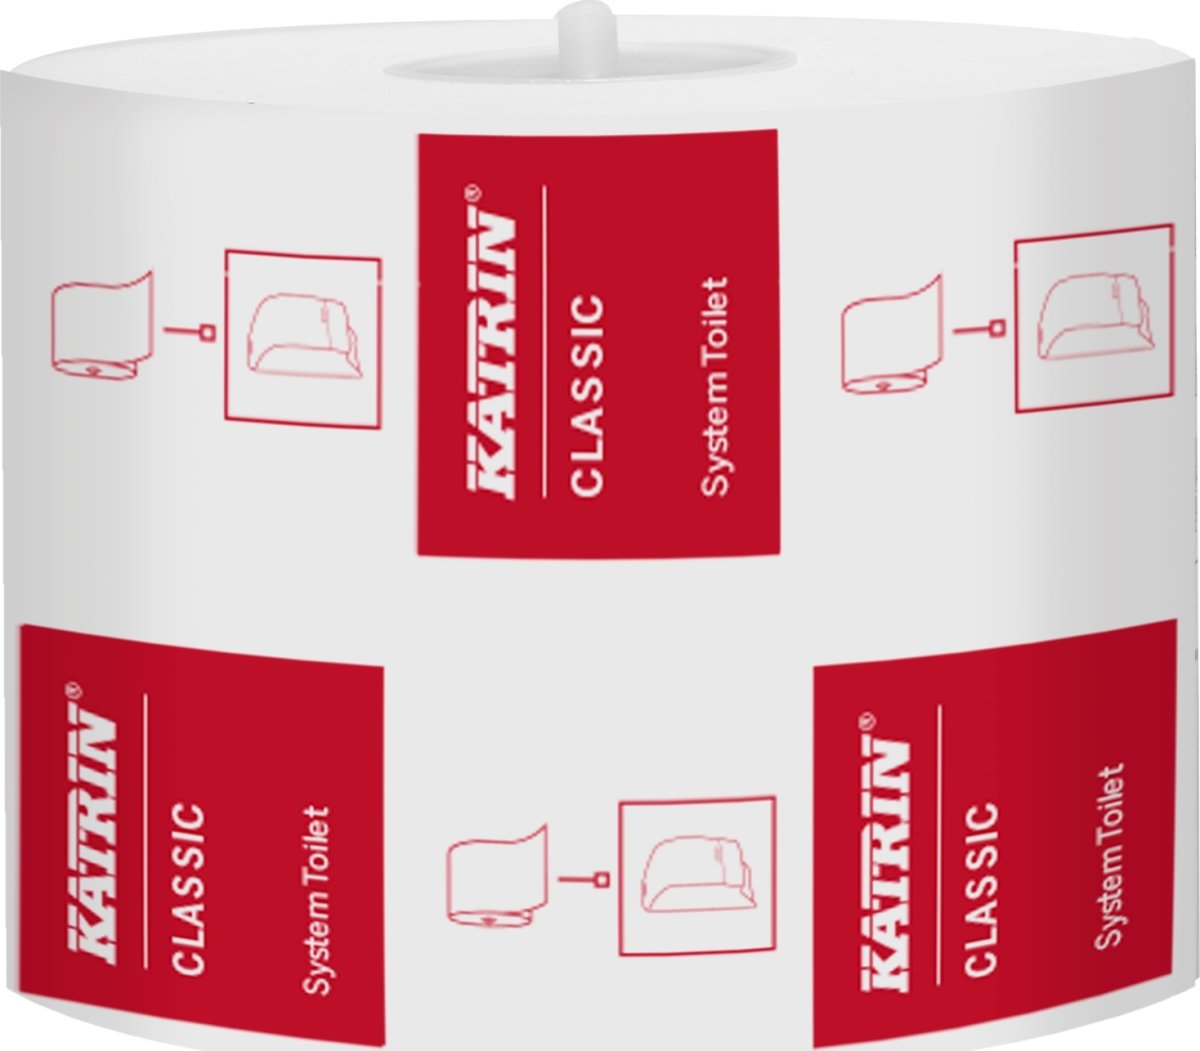 Katrin Classic Toiletpapir til systemdispenser